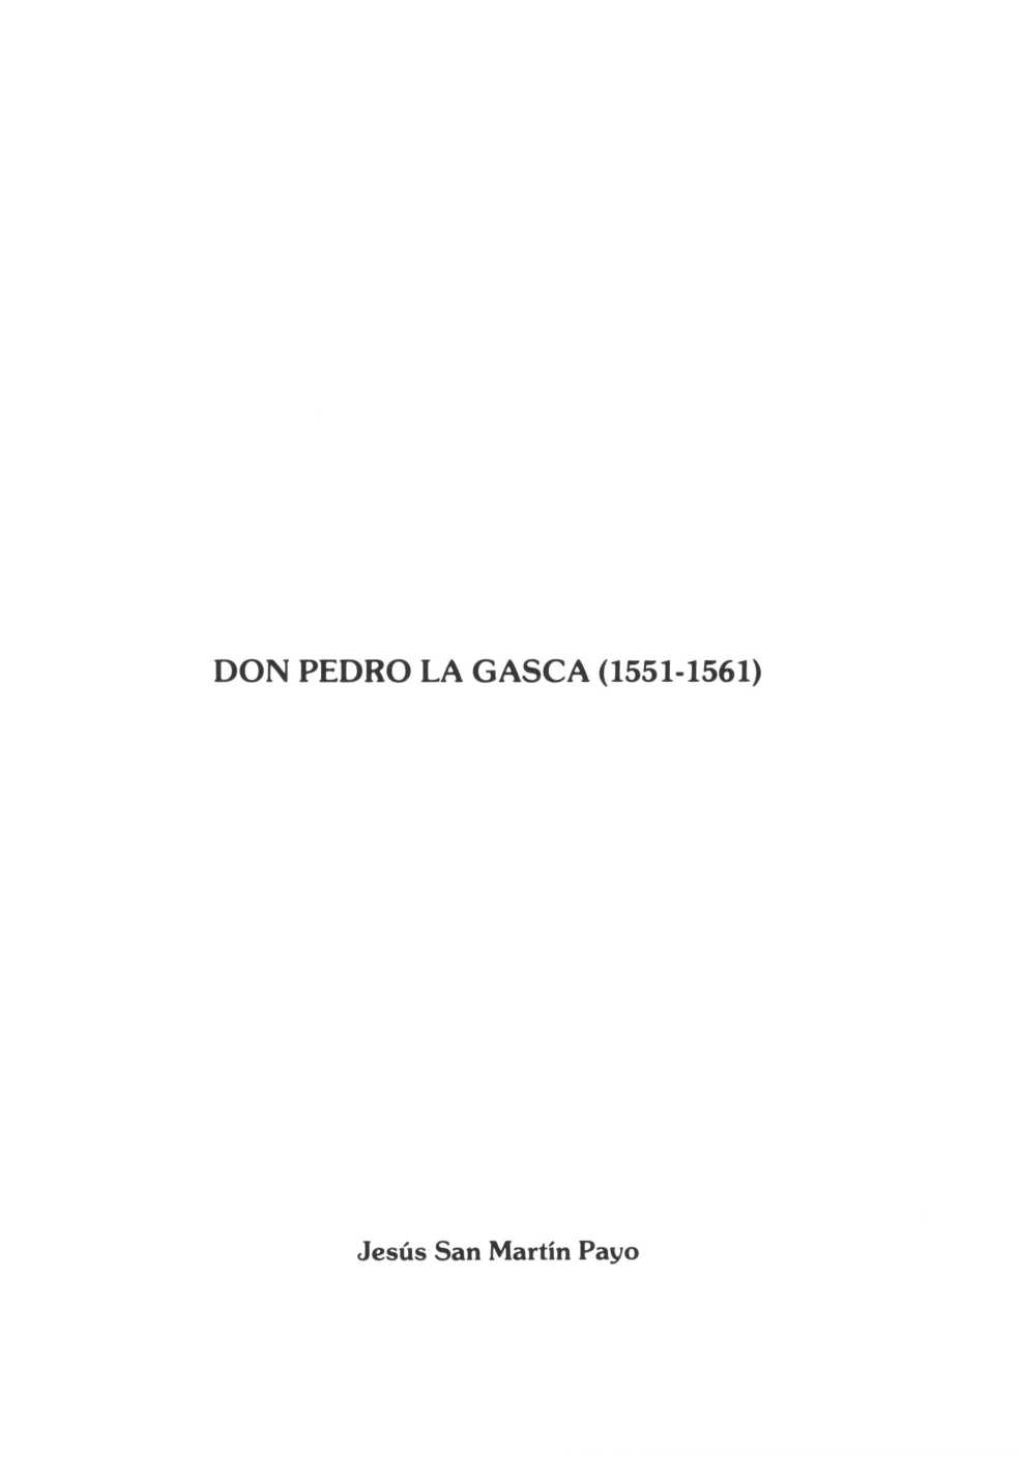 Don Pedro La Gasca (1551-1561)